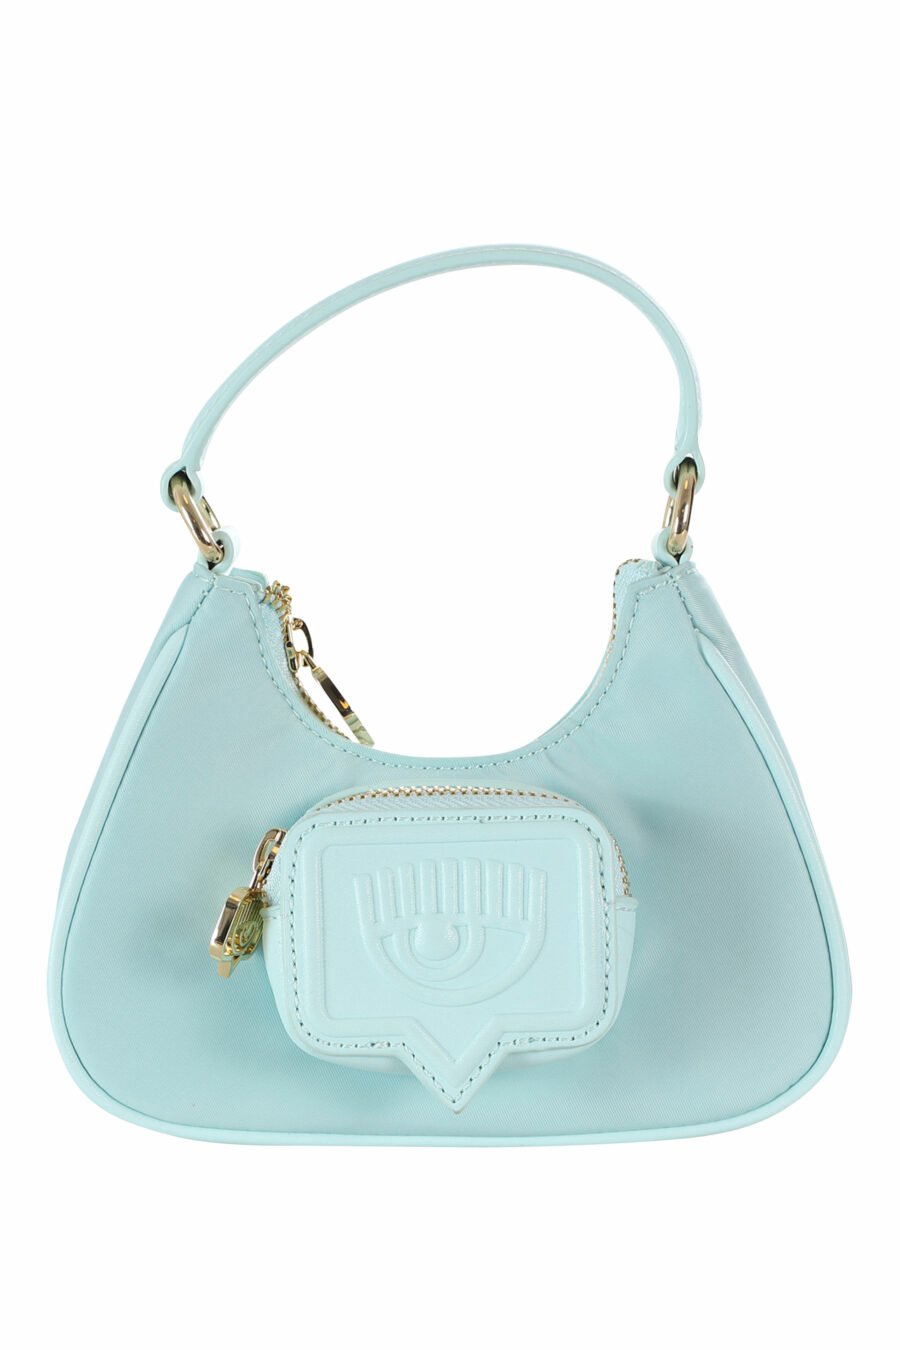 Hellblaue Mini-Umhängetasche im Hobo-Stil mit Tasche und einfarbigem Logo - 8052672352095